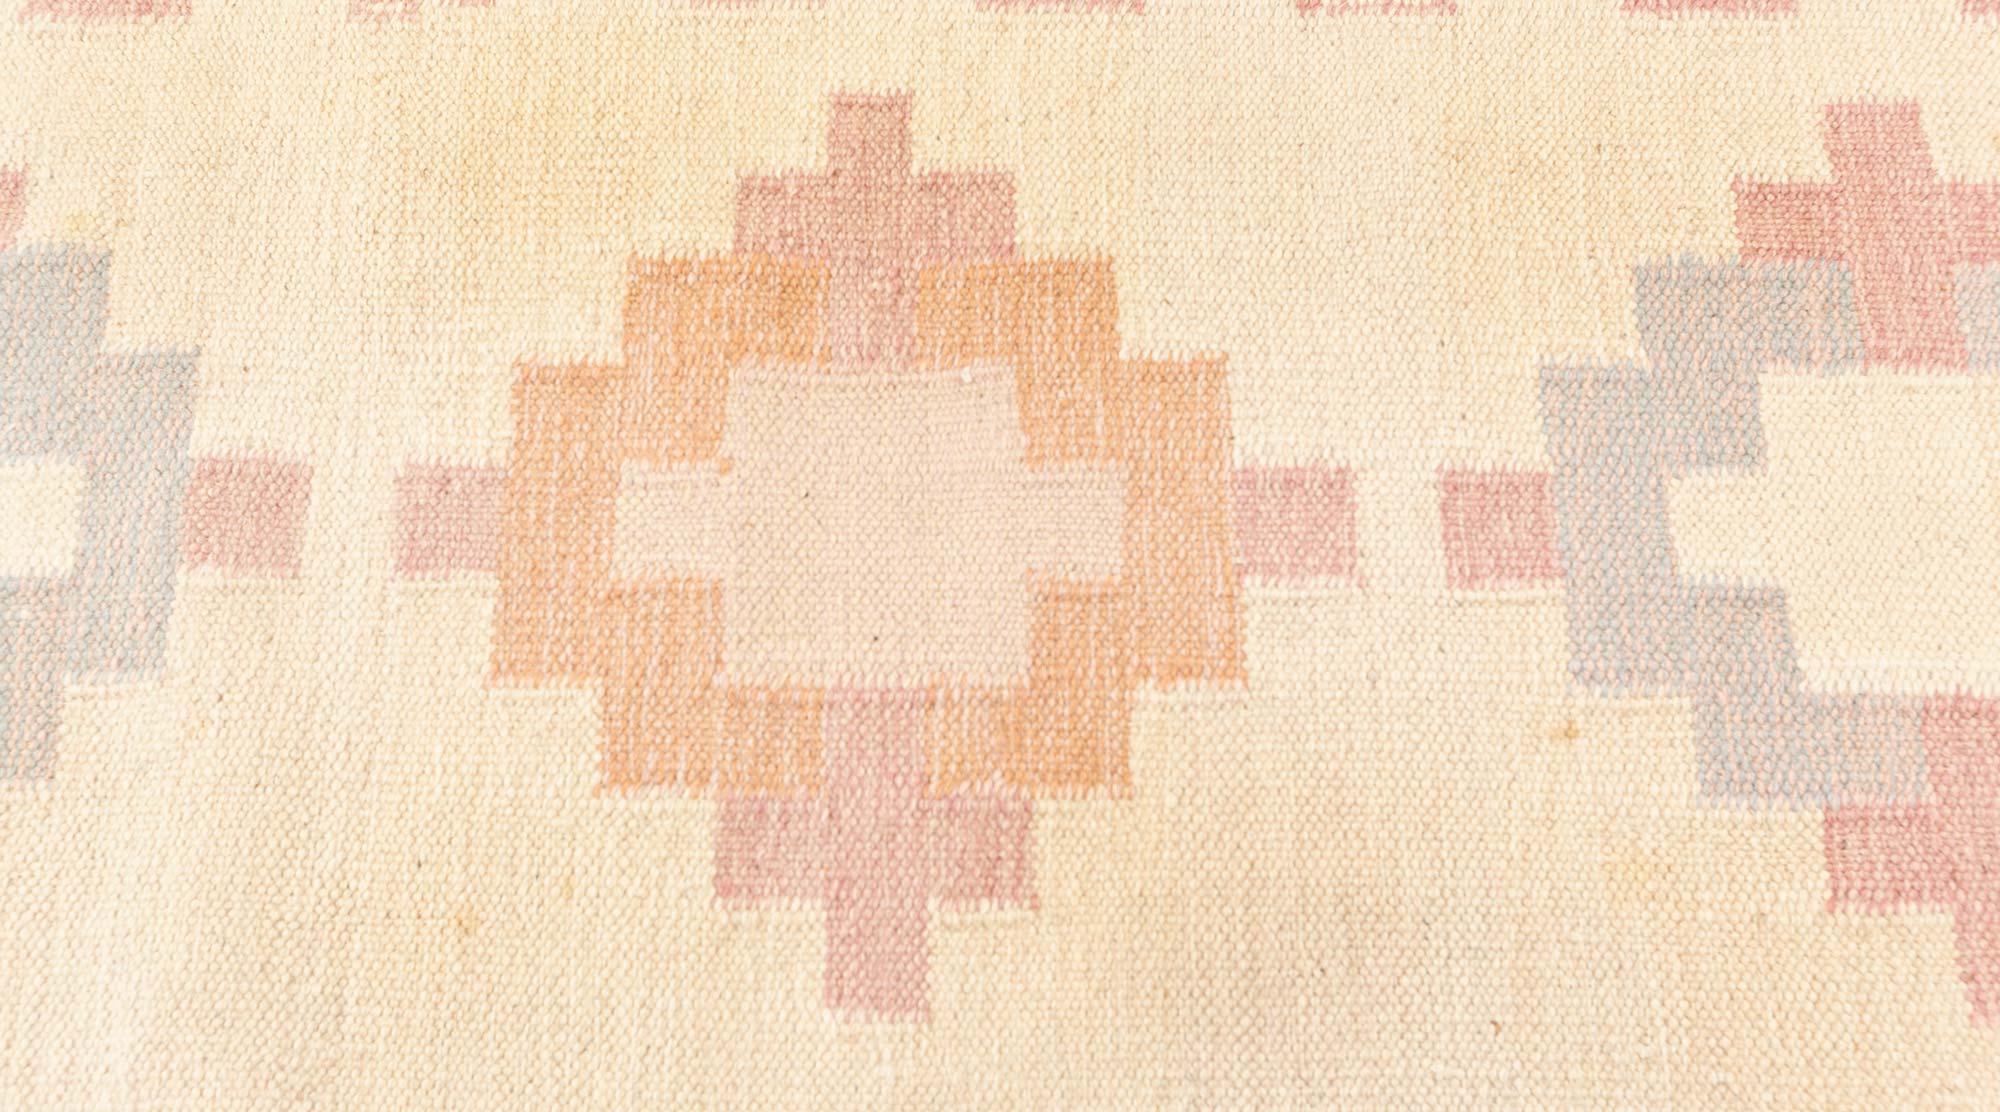 Vintage Swedish double sided rug
Size: 8'3